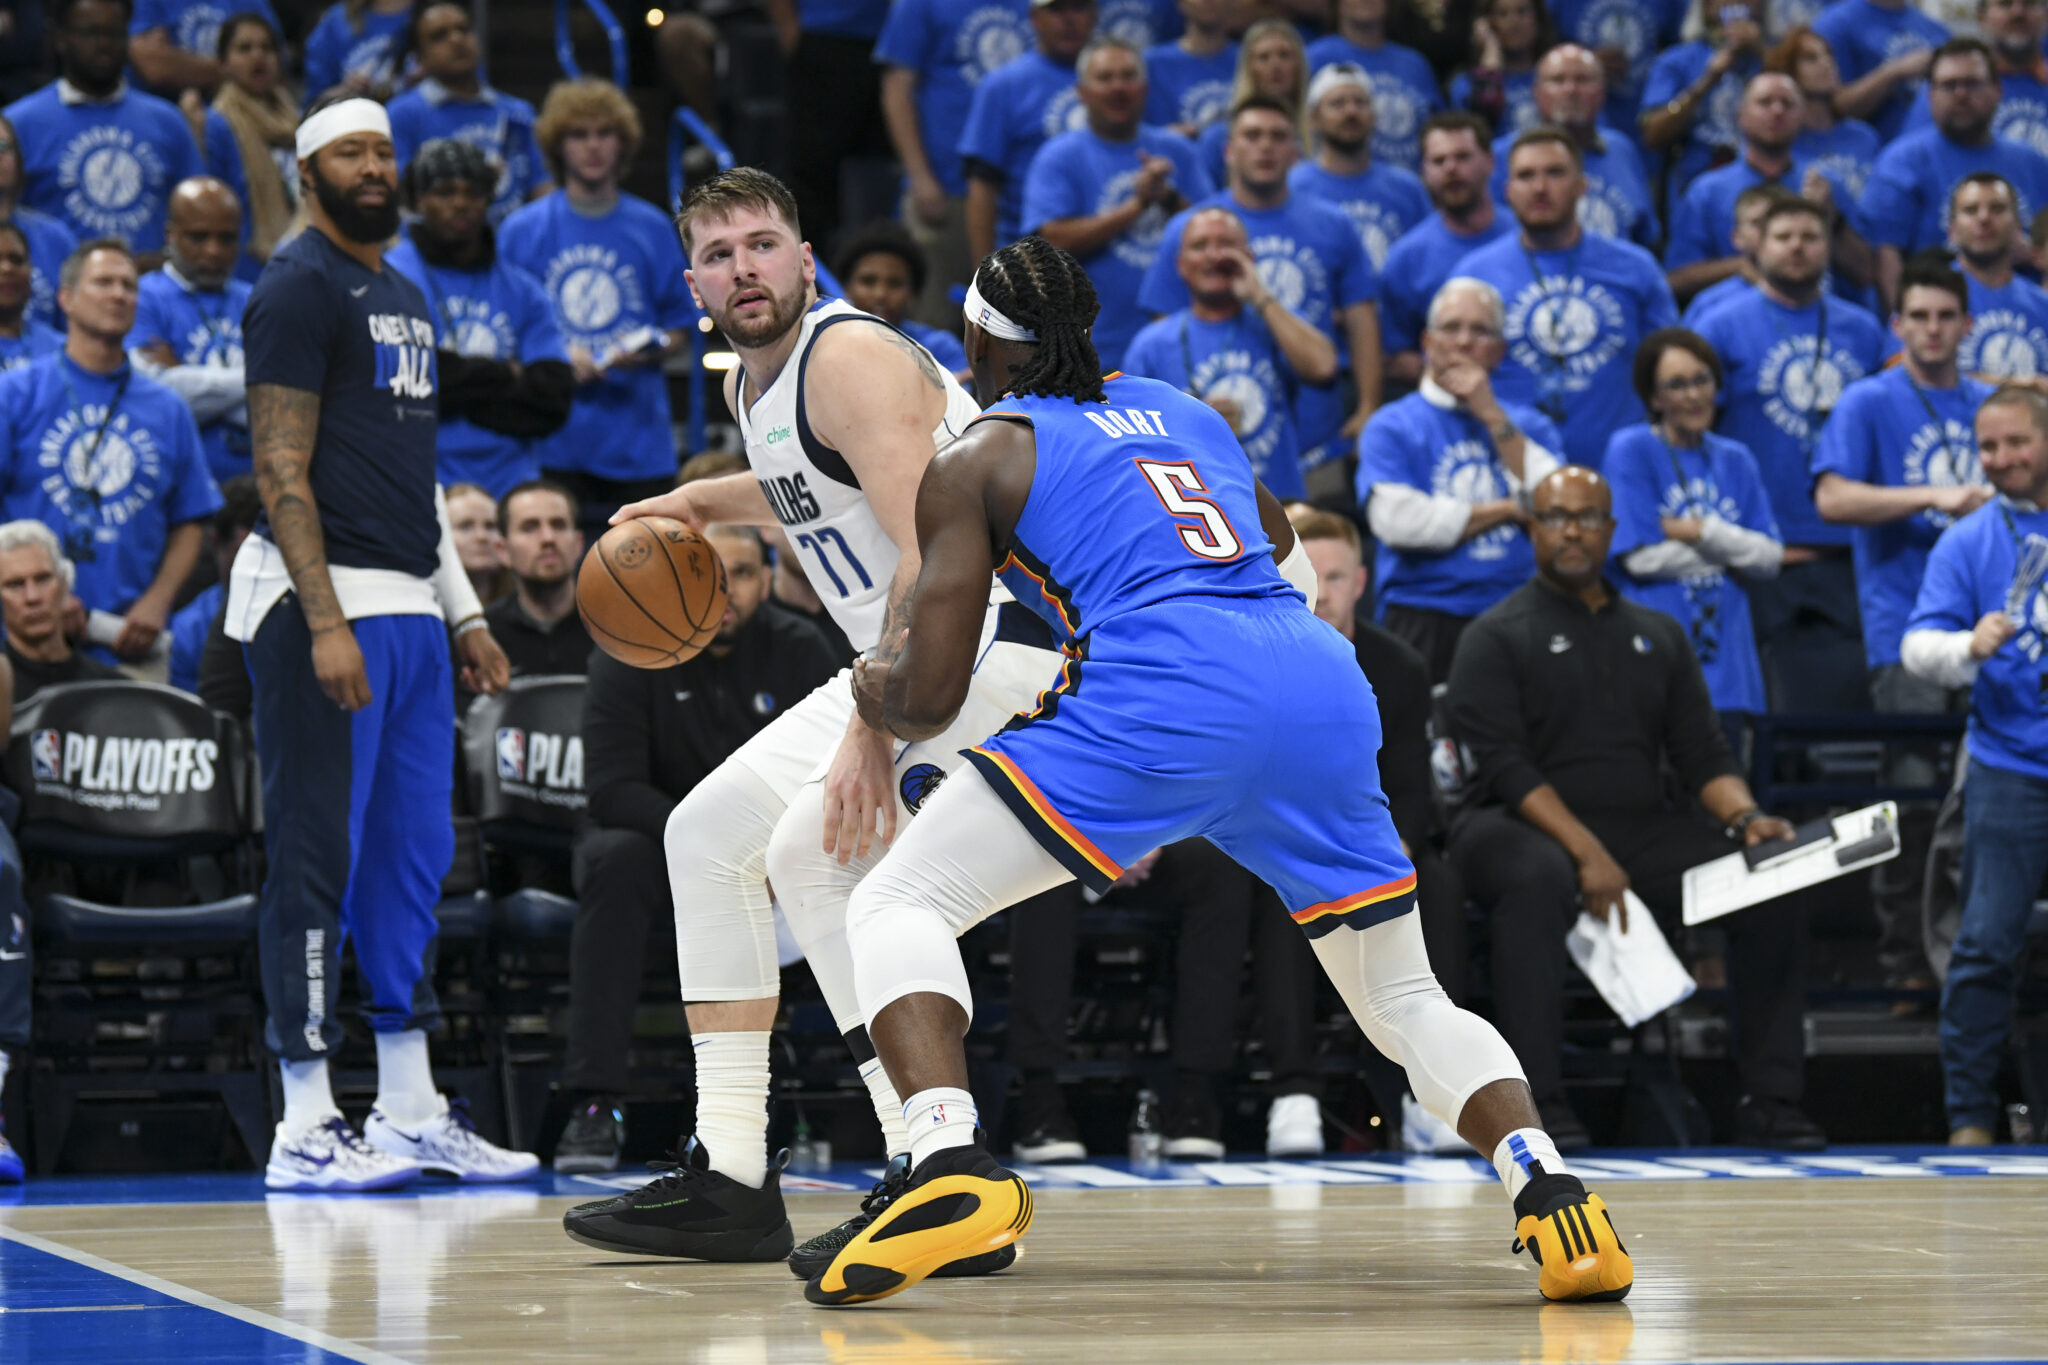 NBA: Luka Doncic, Mavericks top Thunder to tie series at 1-1